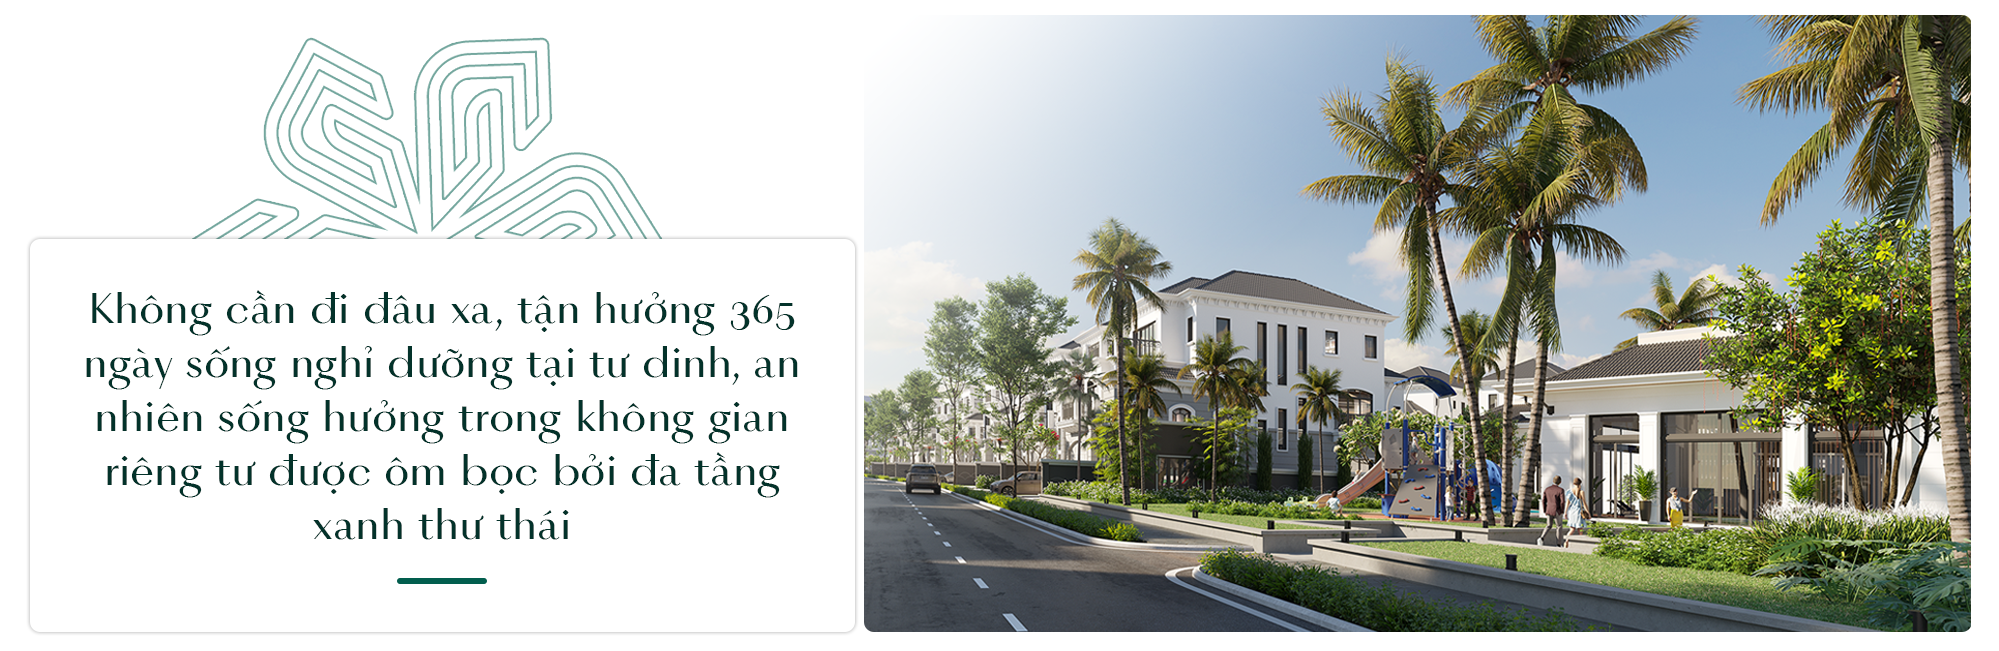 Grand Bay Halong Villas: Bến đỗ của phong cách sống Resort living sang trọng bên vịnh biển- Ảnh 3.